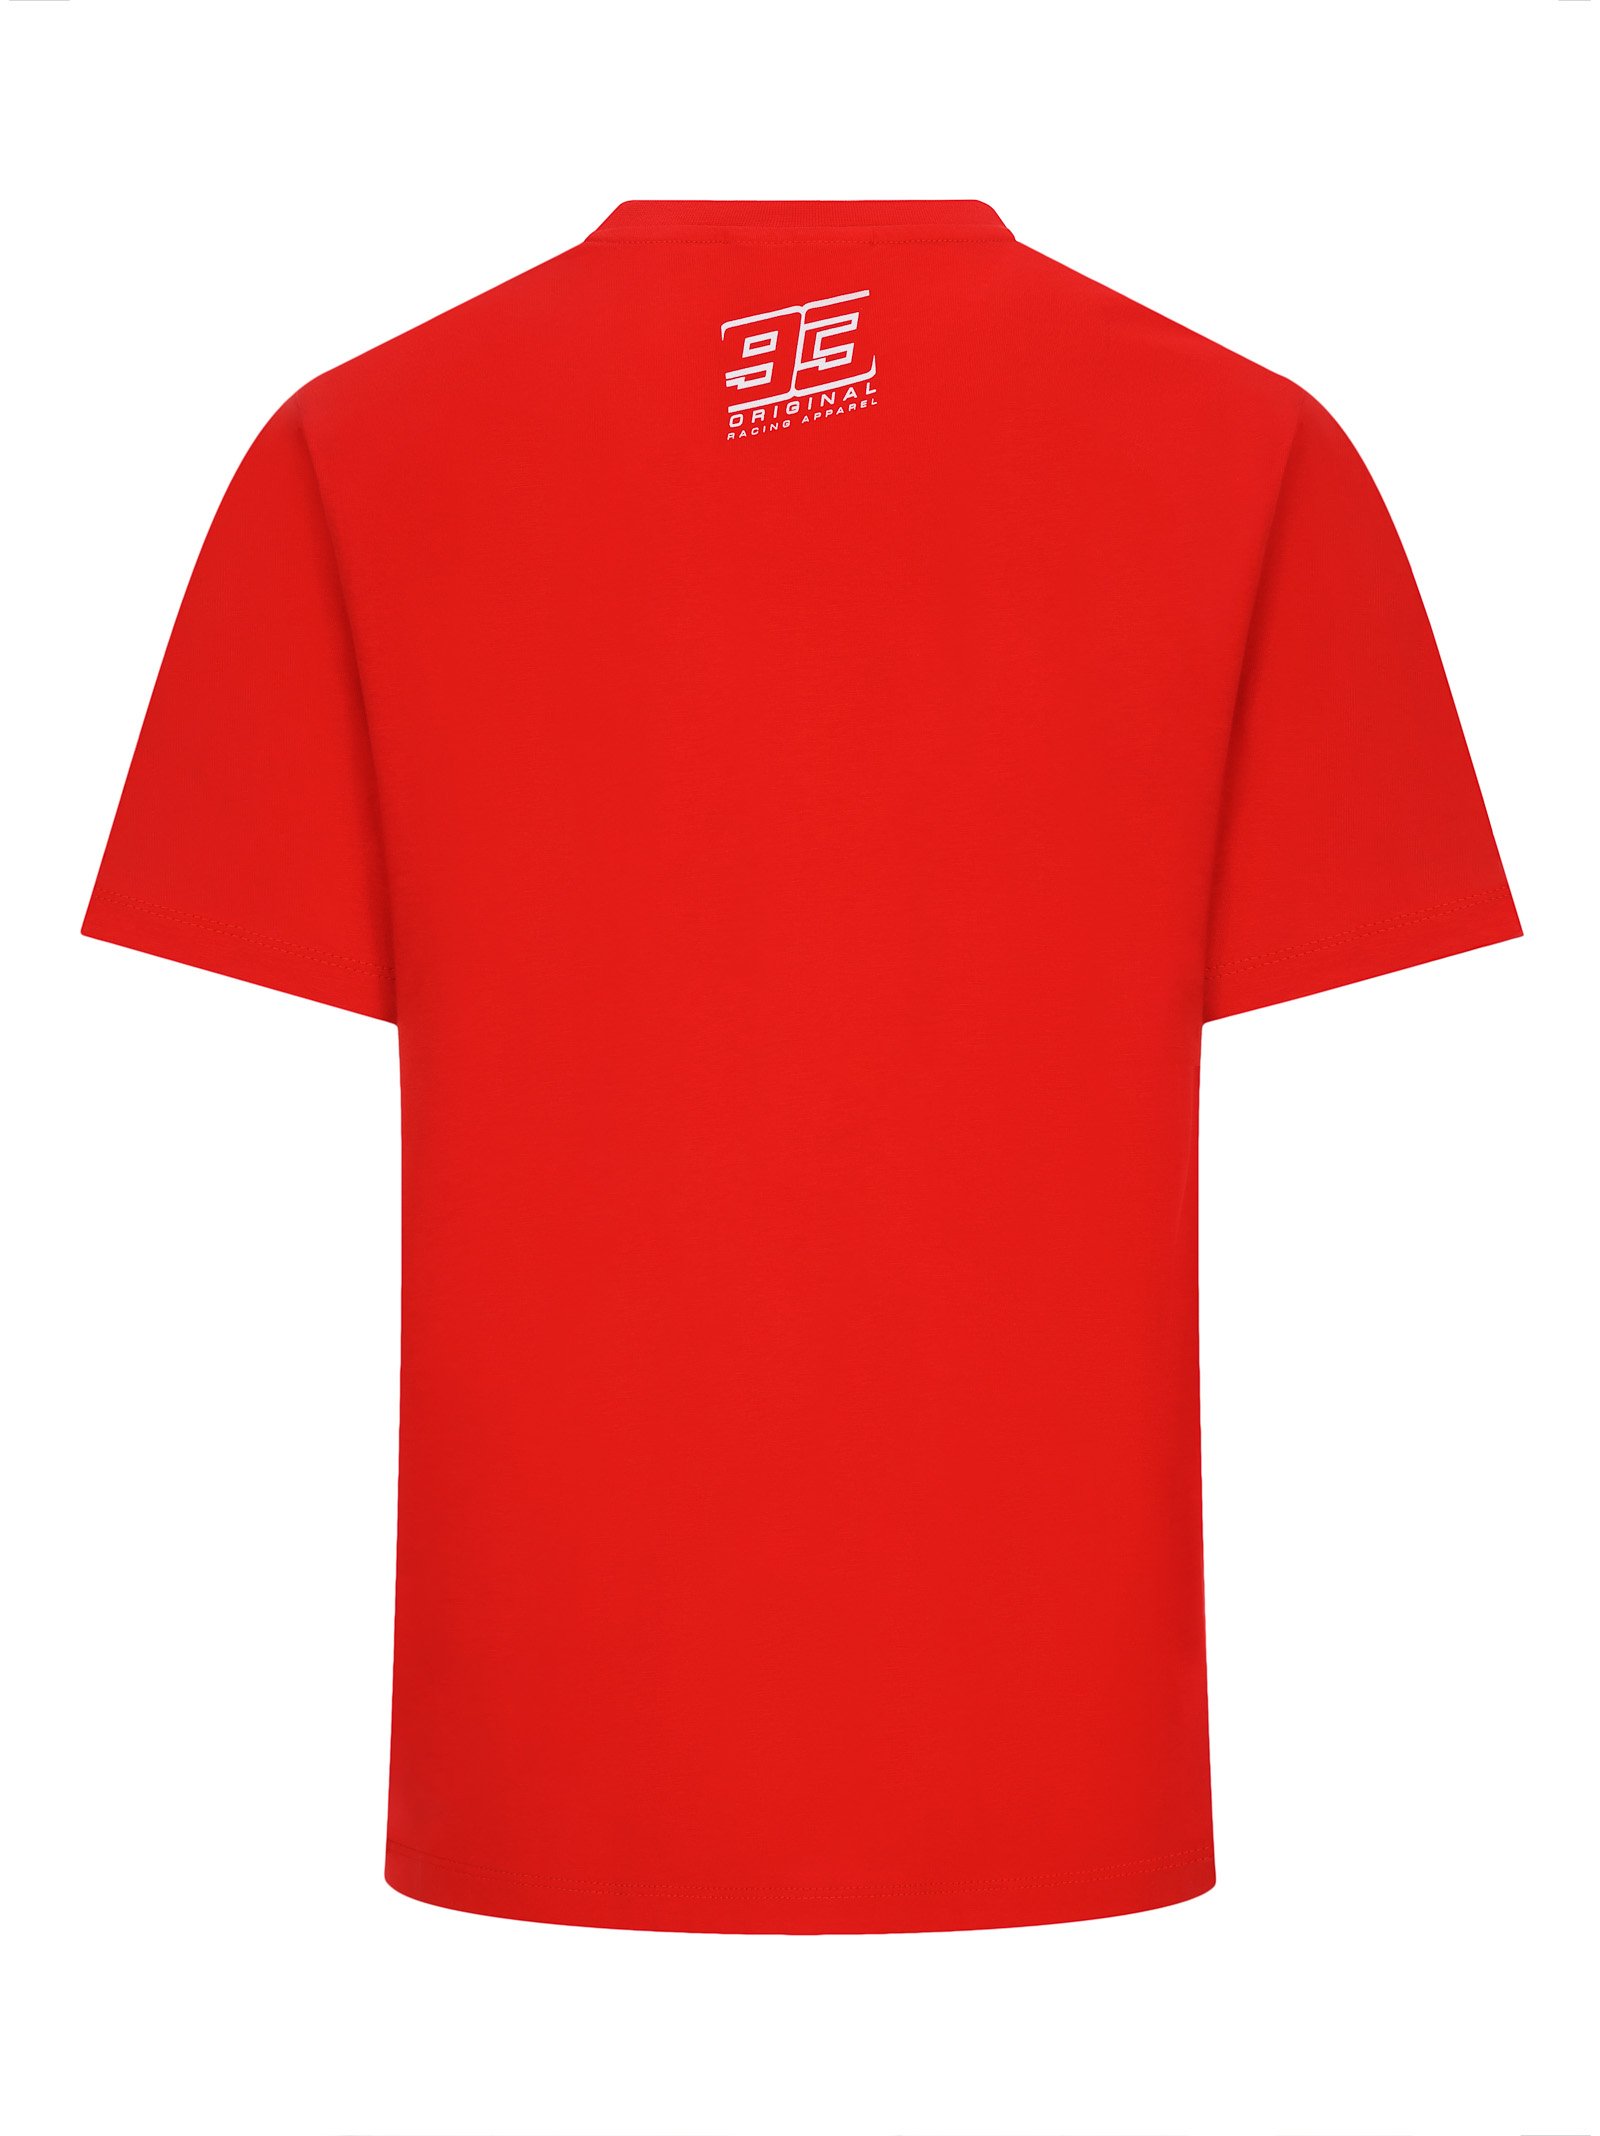 T-shirt homme MARC MARQUEZ 93 rouge relief vue dos